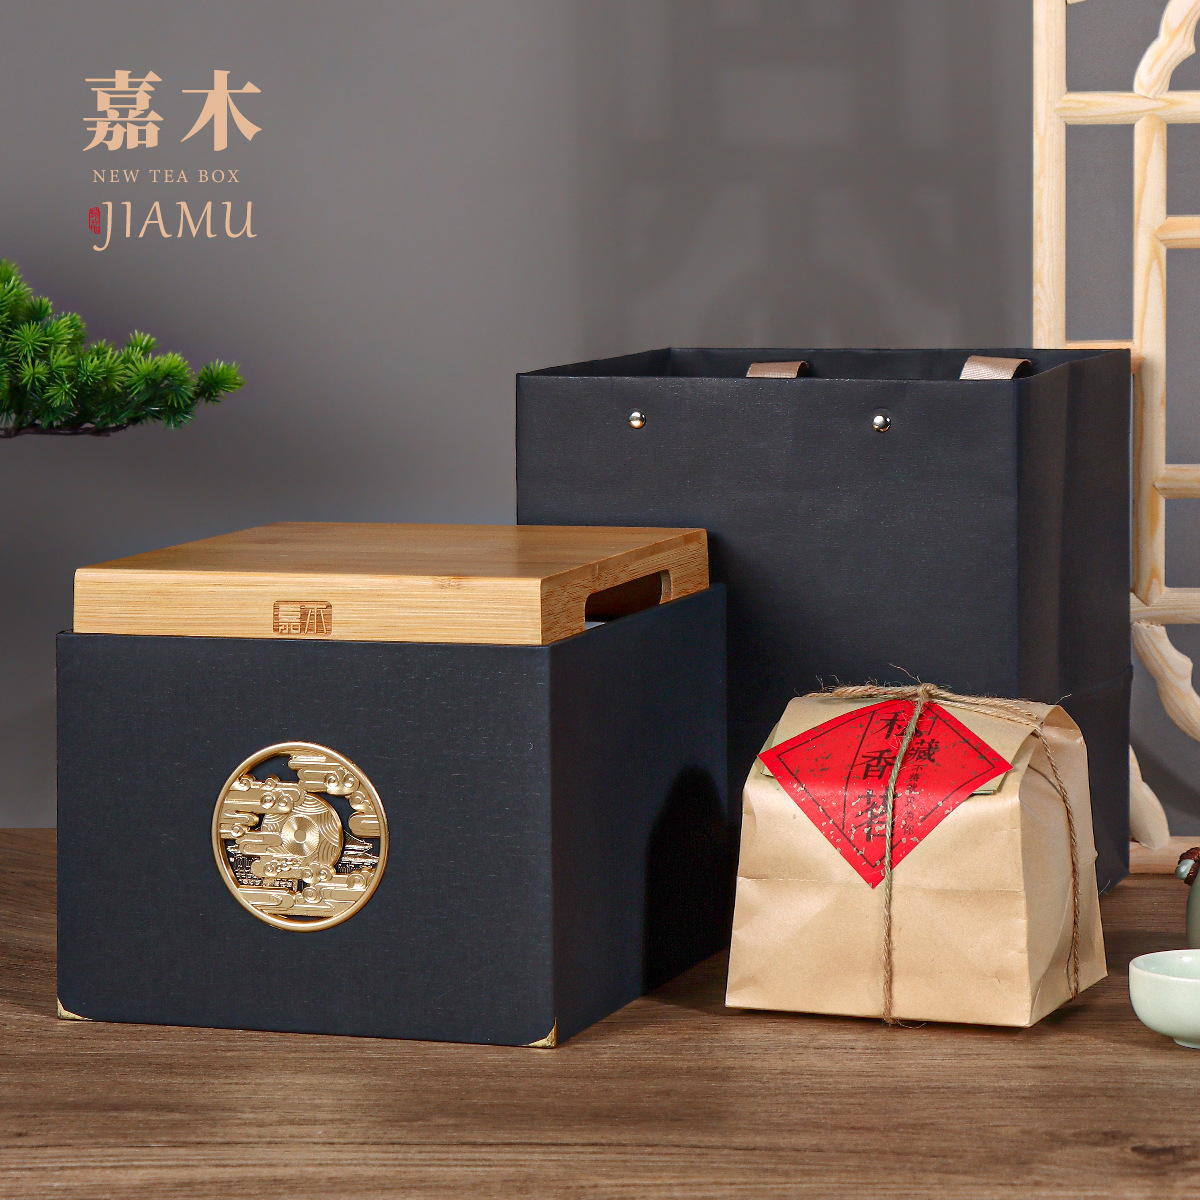 新款竹盒单包明前龙井方包茶叶包装盒空礼盒绿茶龙井茶礼盒装空盒